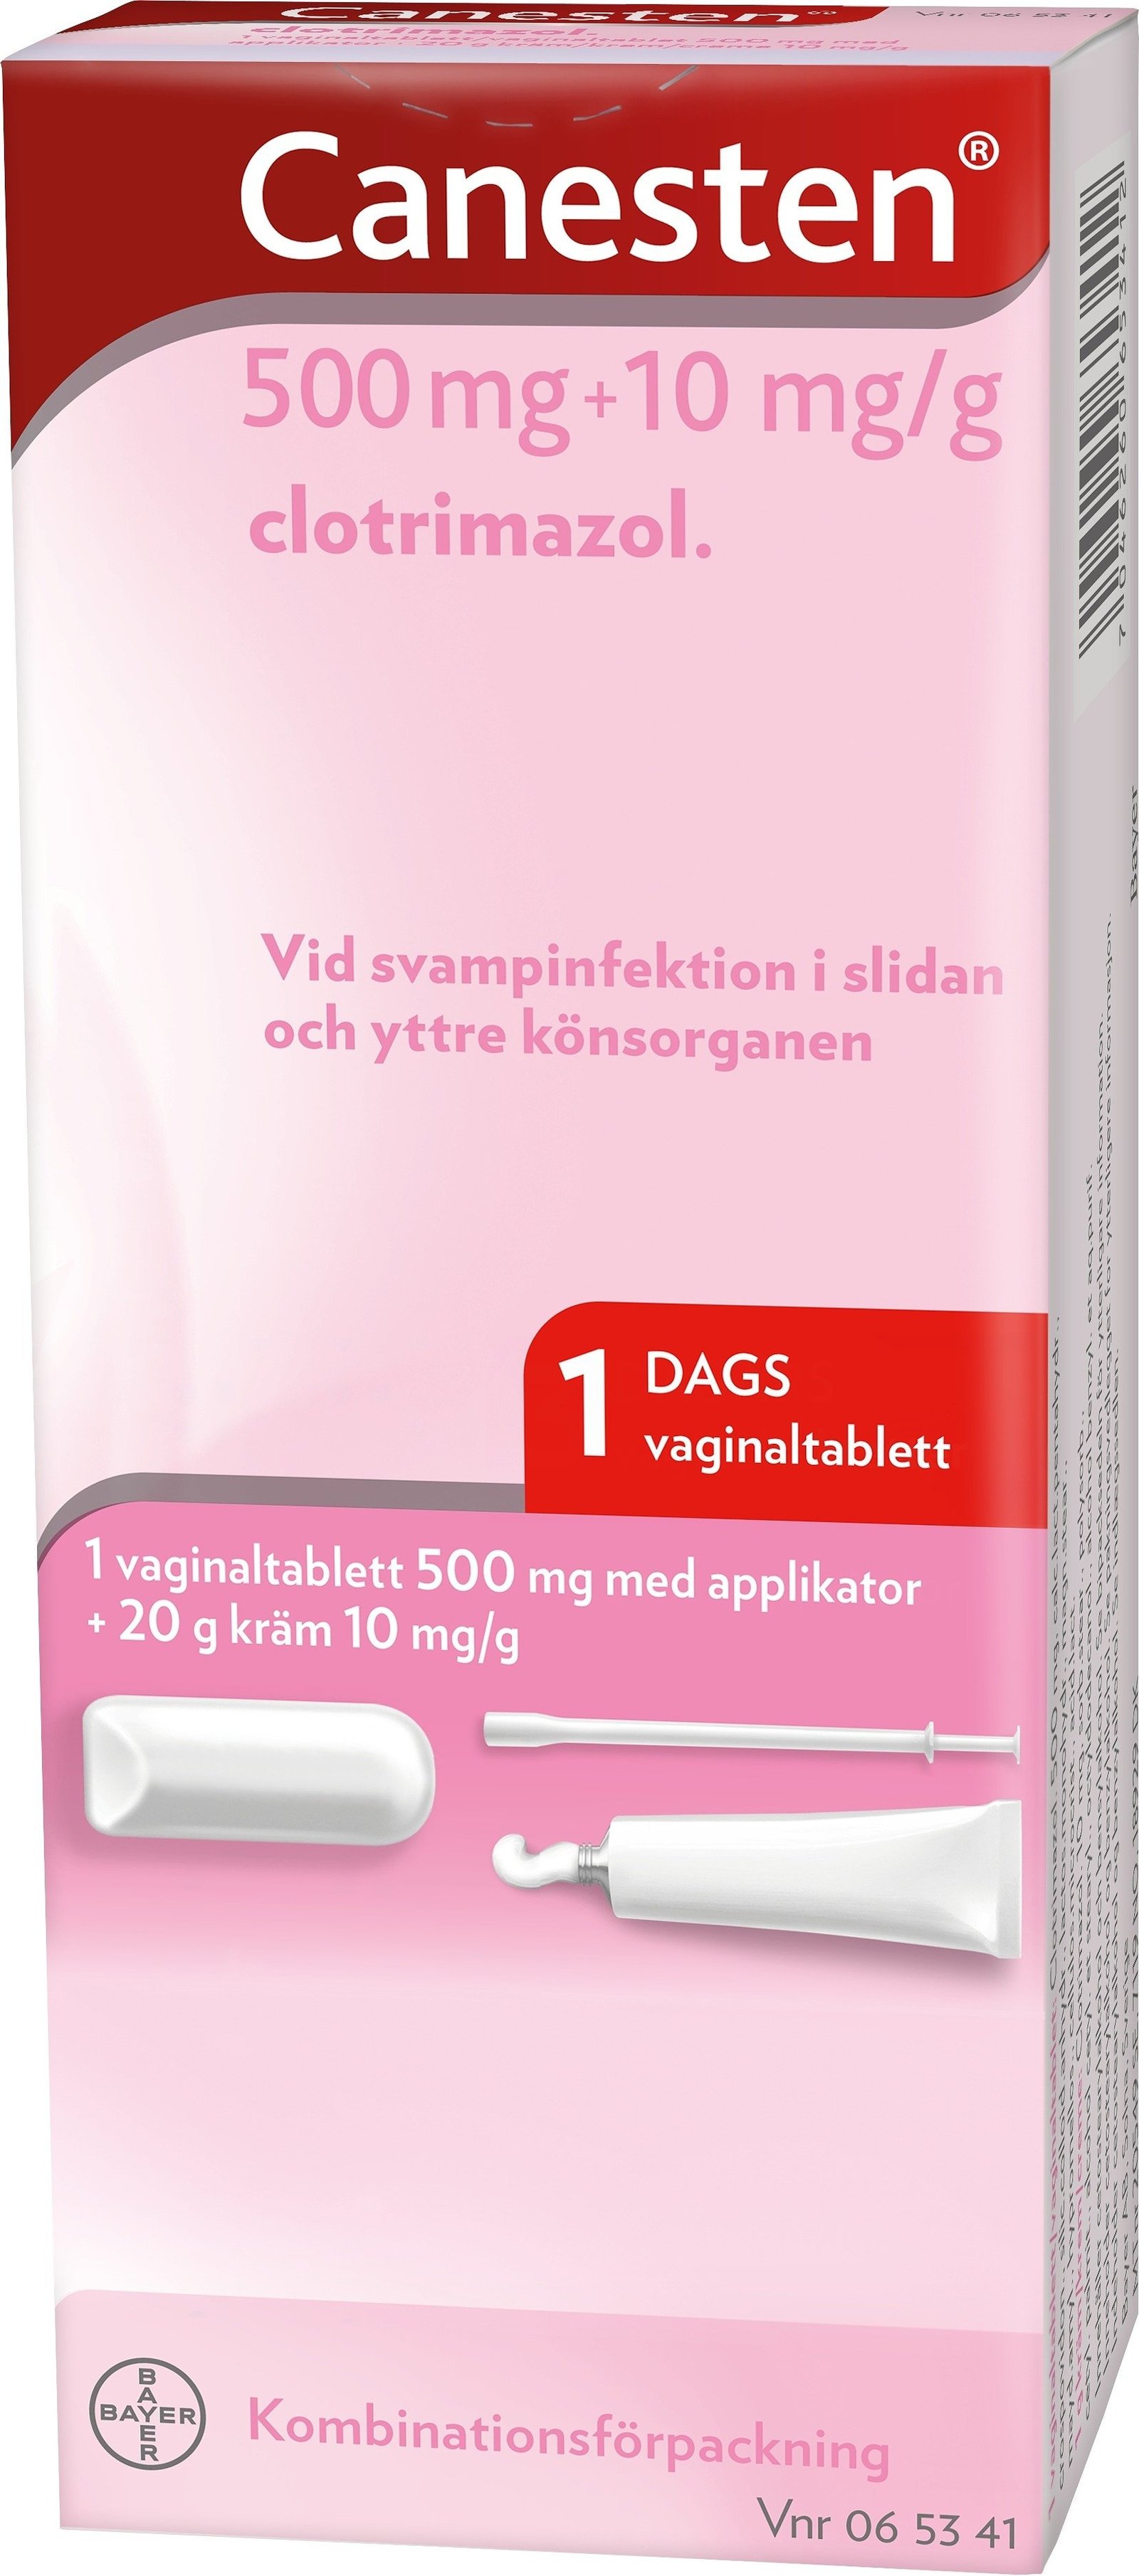 Kombinationsförpackning Vaginaltablett 500 mg 1 st + 20 g Kräm10 mg/g